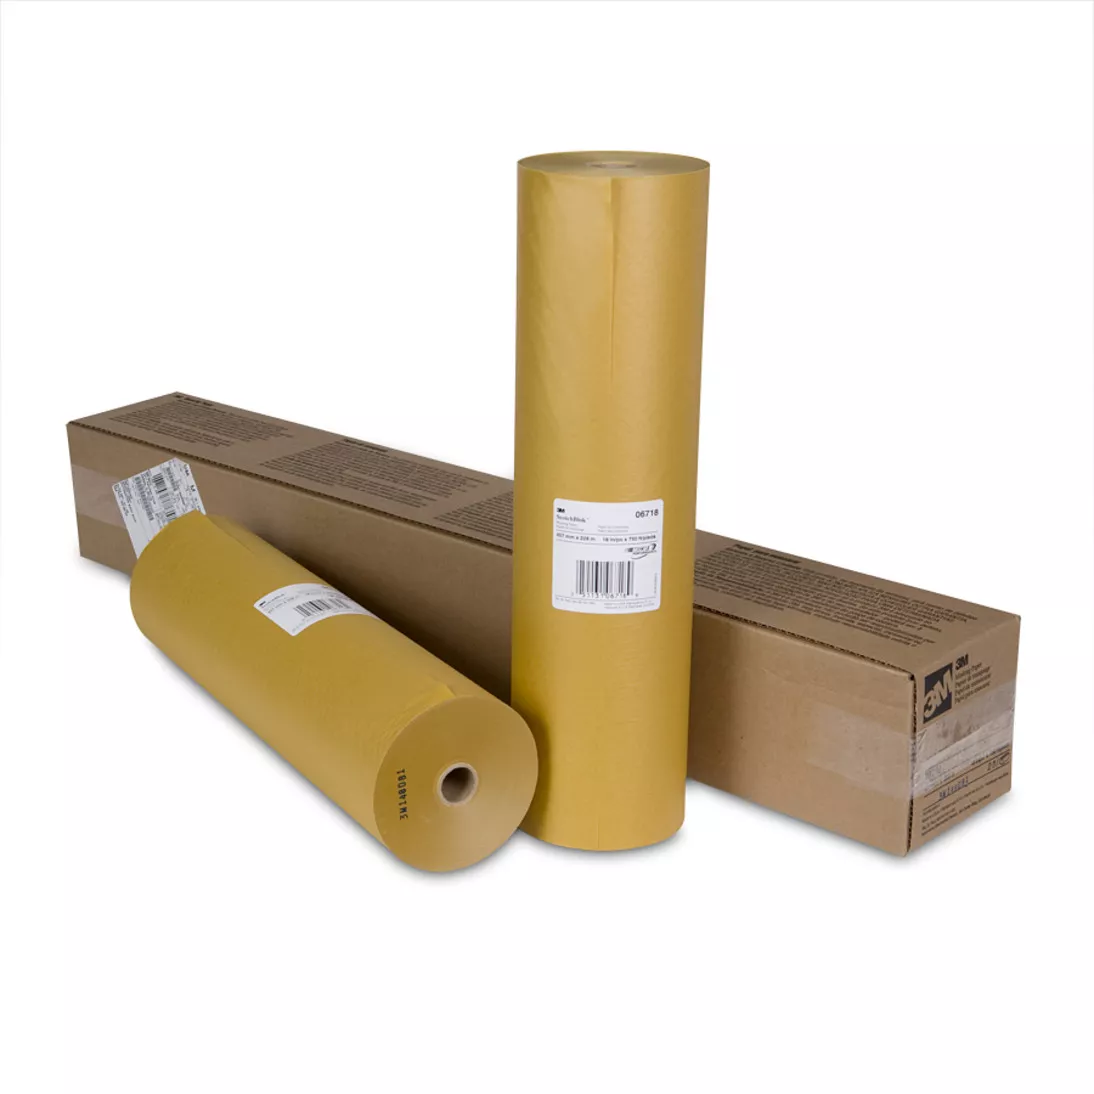 3M™ Scotchblok™ Masking Paper, 06718, 18 in x 750 ft, 2 per case